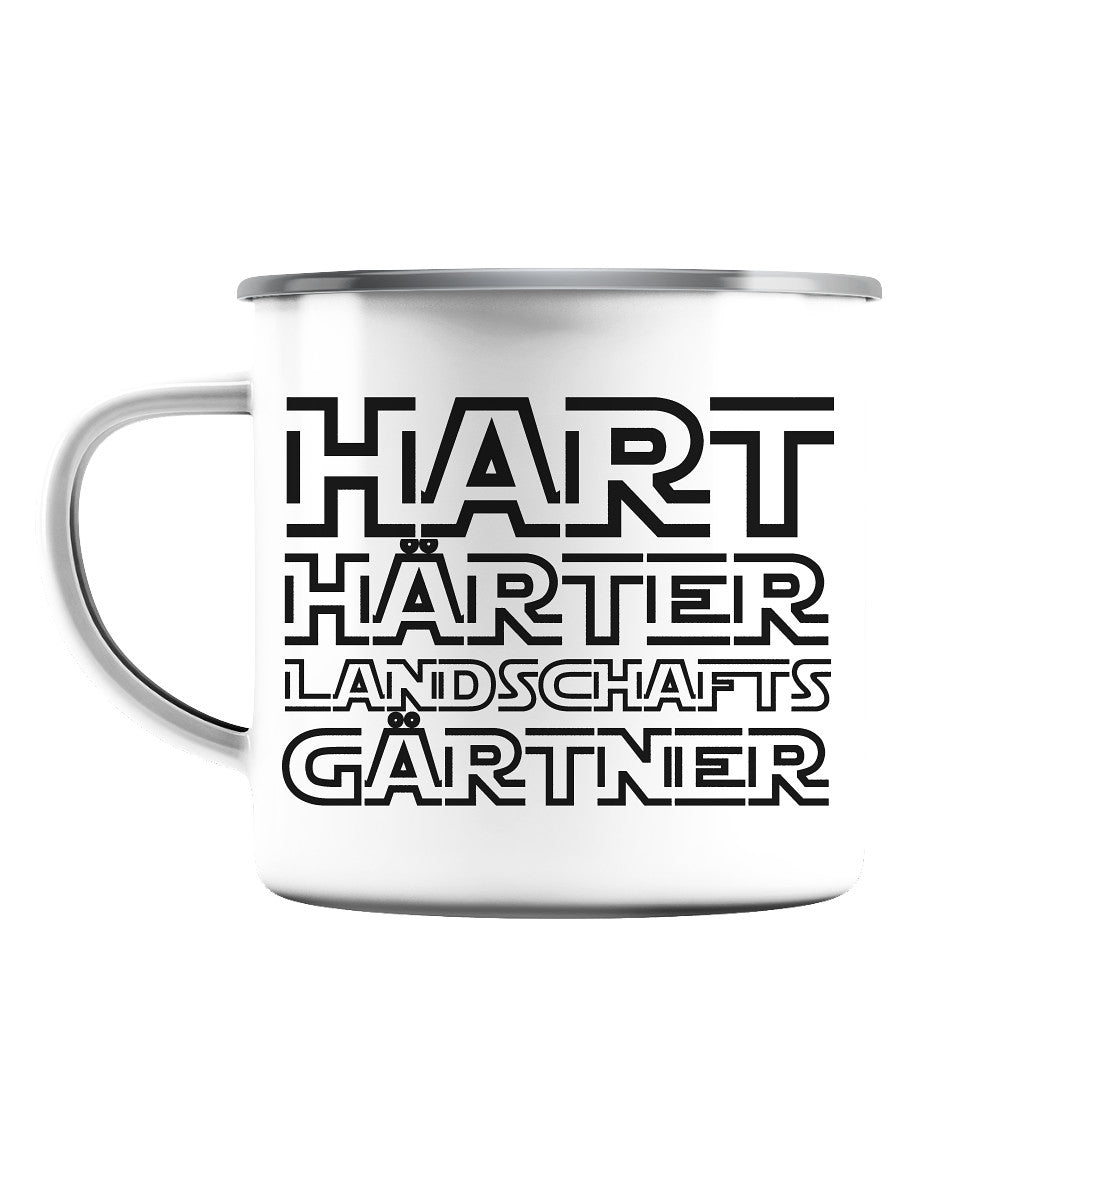 Hart, härter, Landschaftsgärtner - Emaille Tasse (Silber)